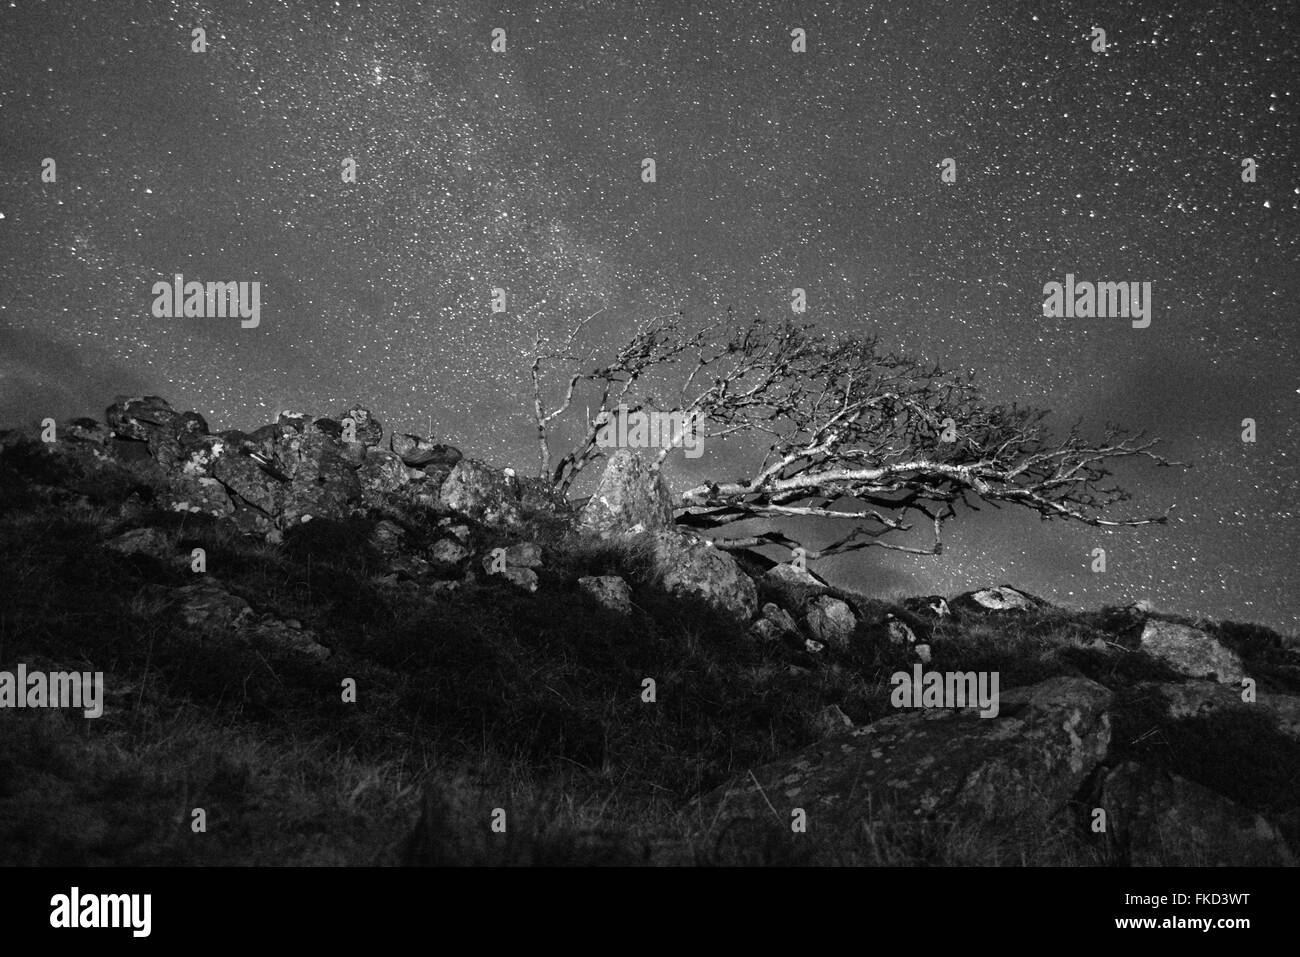 Le vent Rowan Tree (Sorbus aucuparia) contre un ciel étoilé. Île de Lewis. L'Écosse. Le noir et blanc Banque D'Images